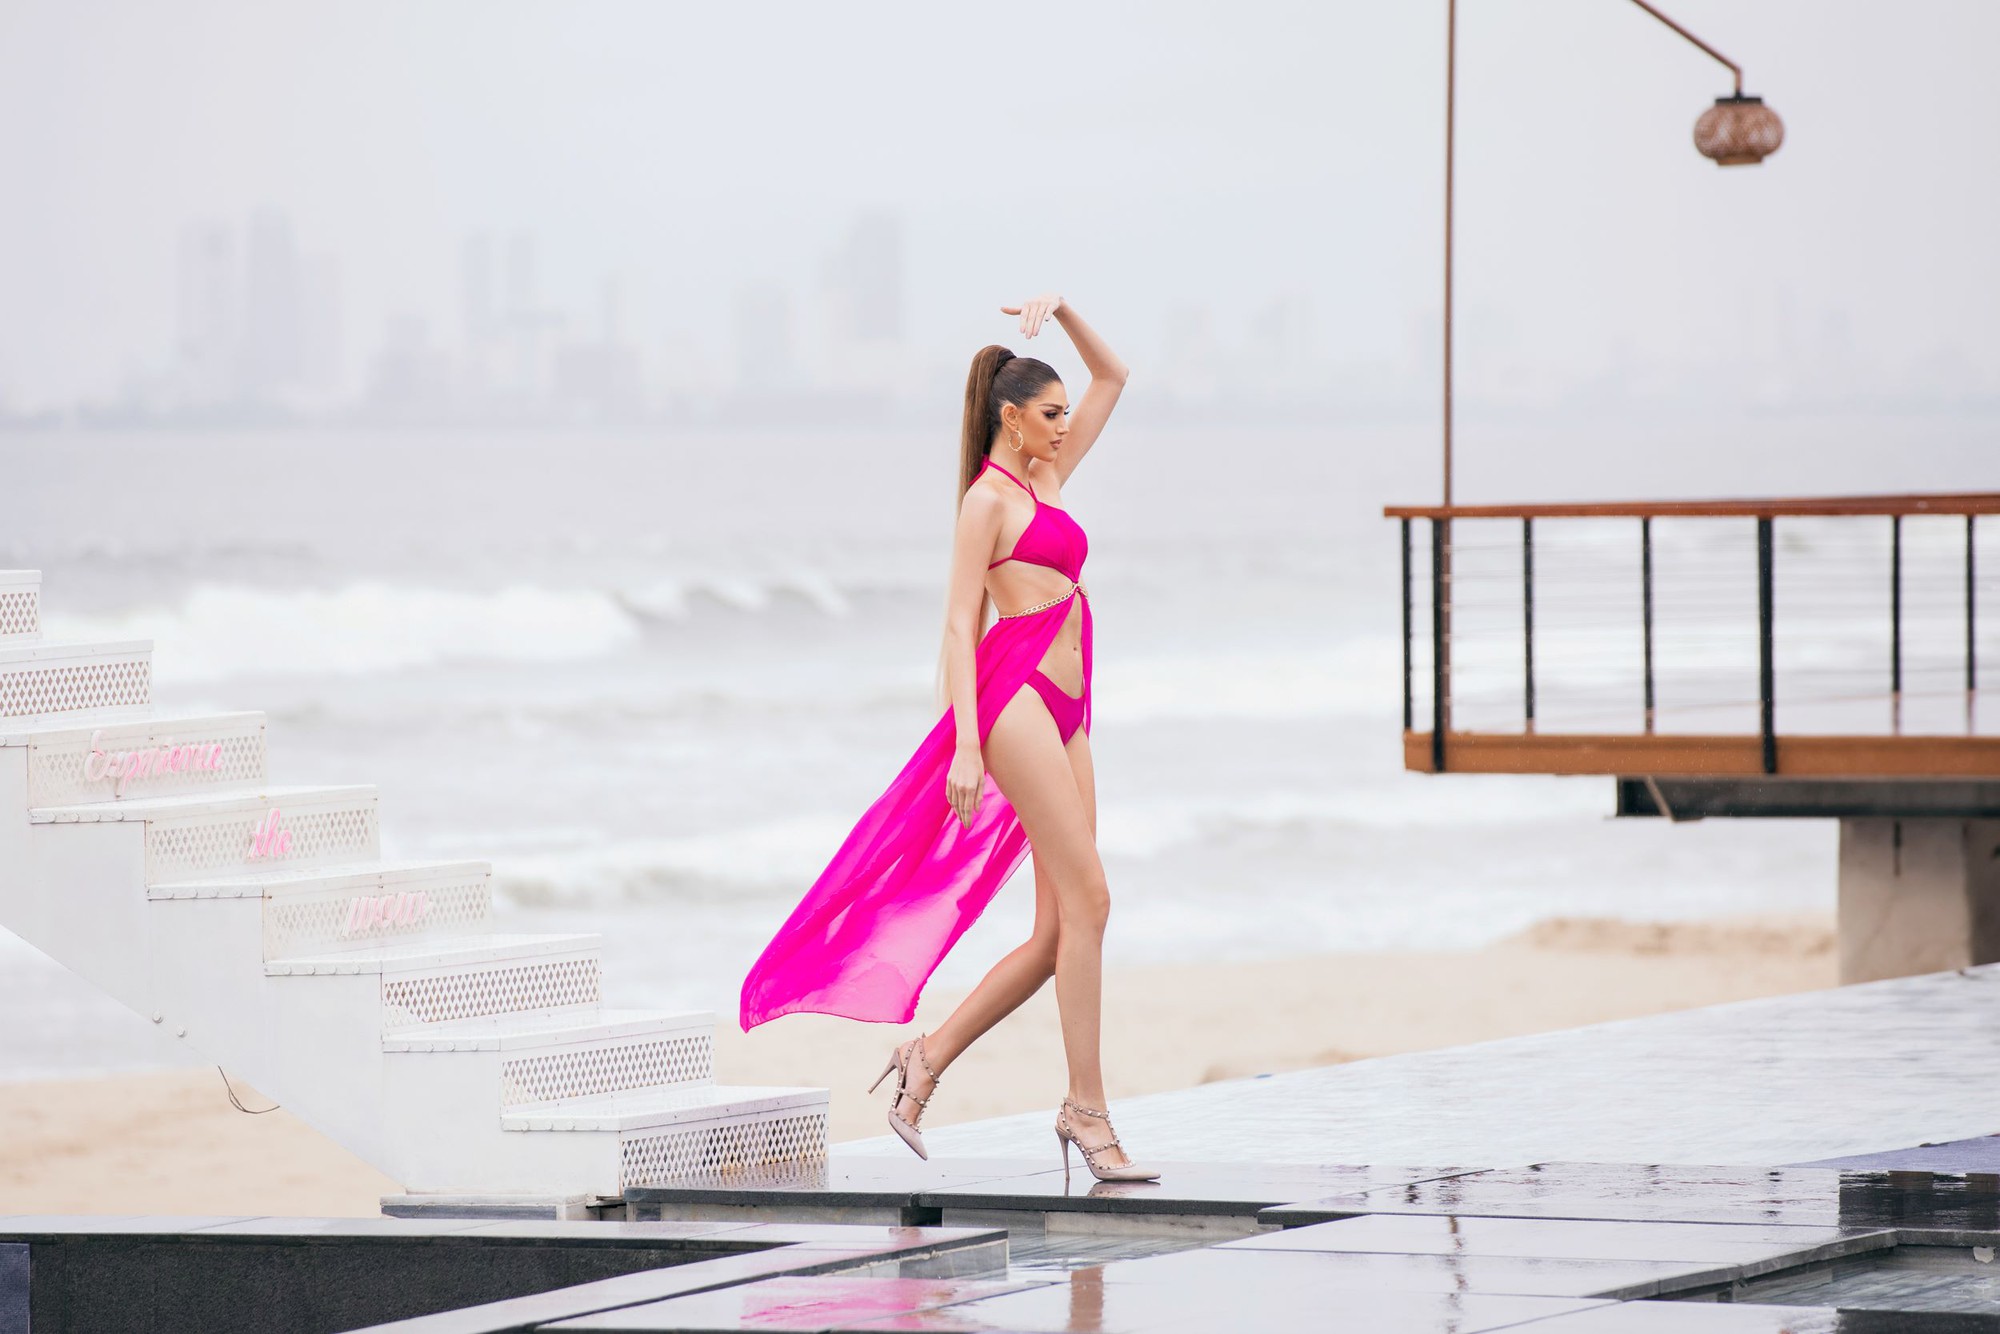 Muôn kiểu sắc thái thí sinh Hoa hậu Hòa bình quốc tế 2023 trong trang phục bikini - Ảnh 13.